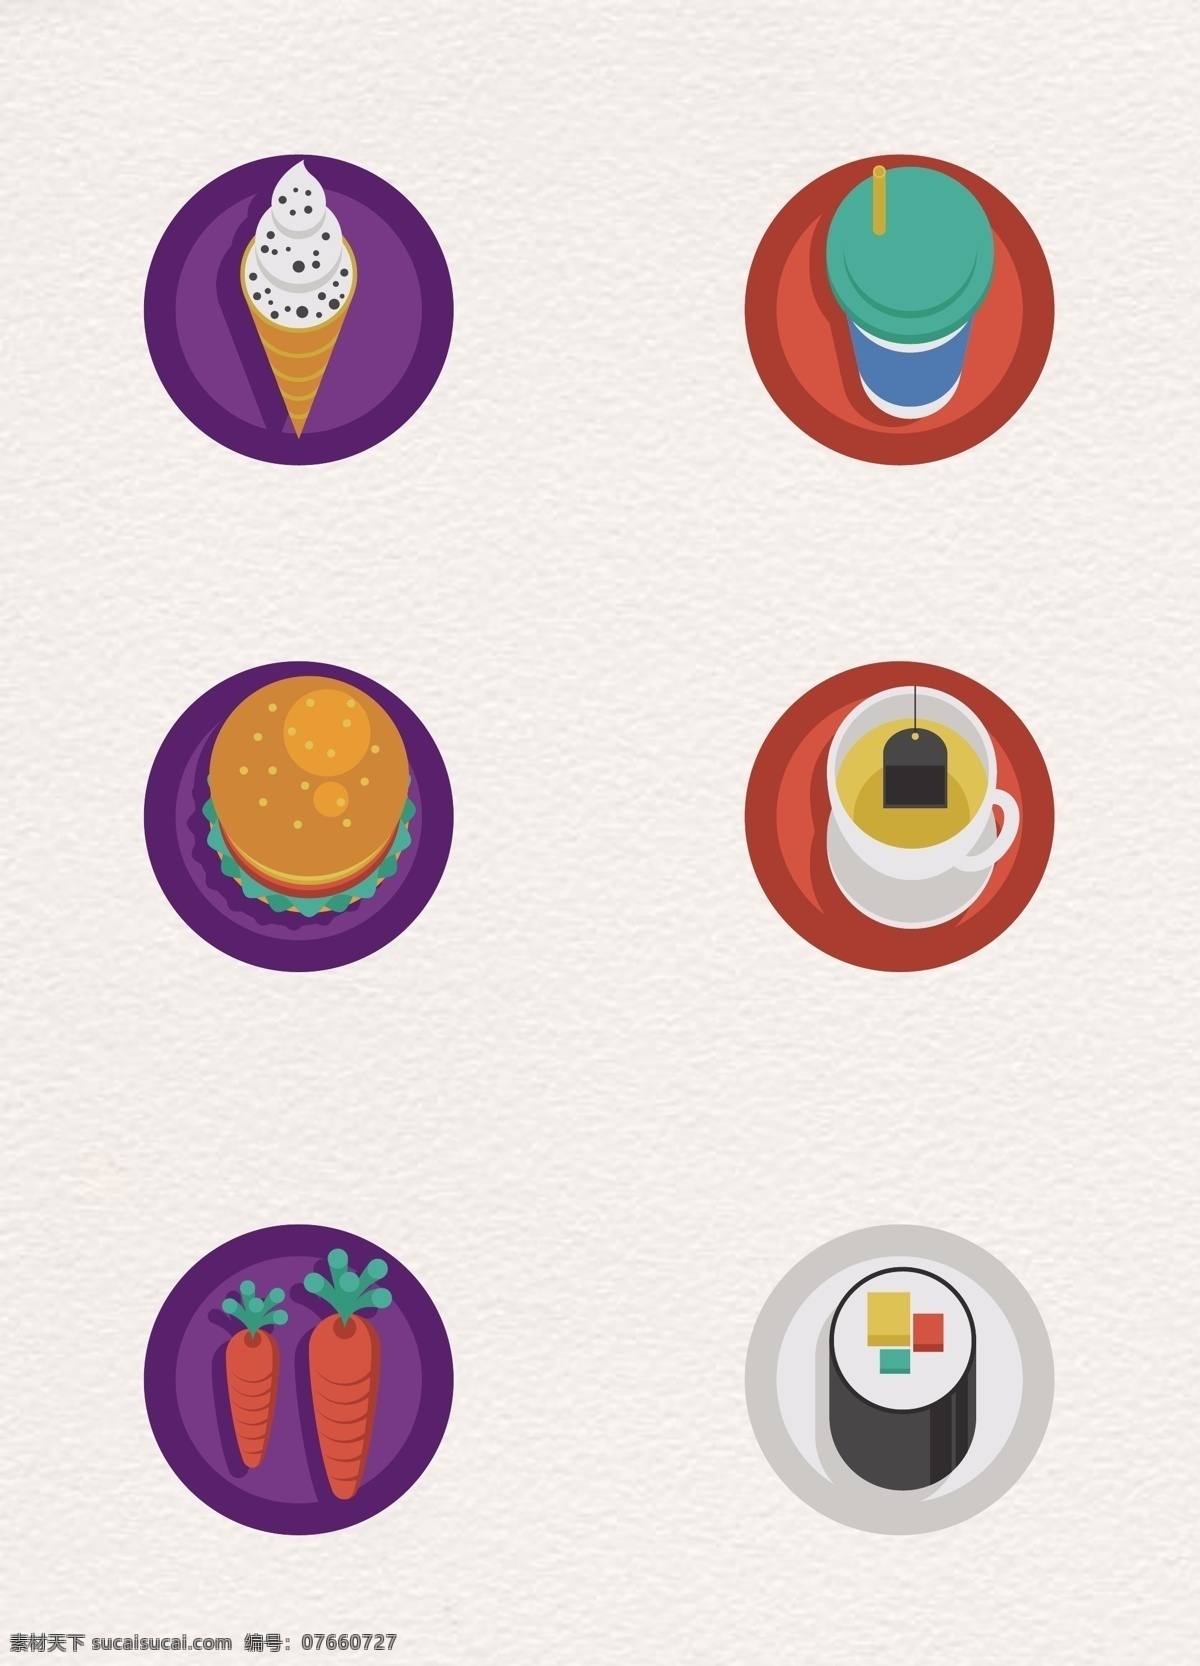 彩色 微 立体 美食 图标 合集 卡通 雪糕 汉堡 寿司 微立体 美食图标 食物图标 咖啡 茶 萝卜